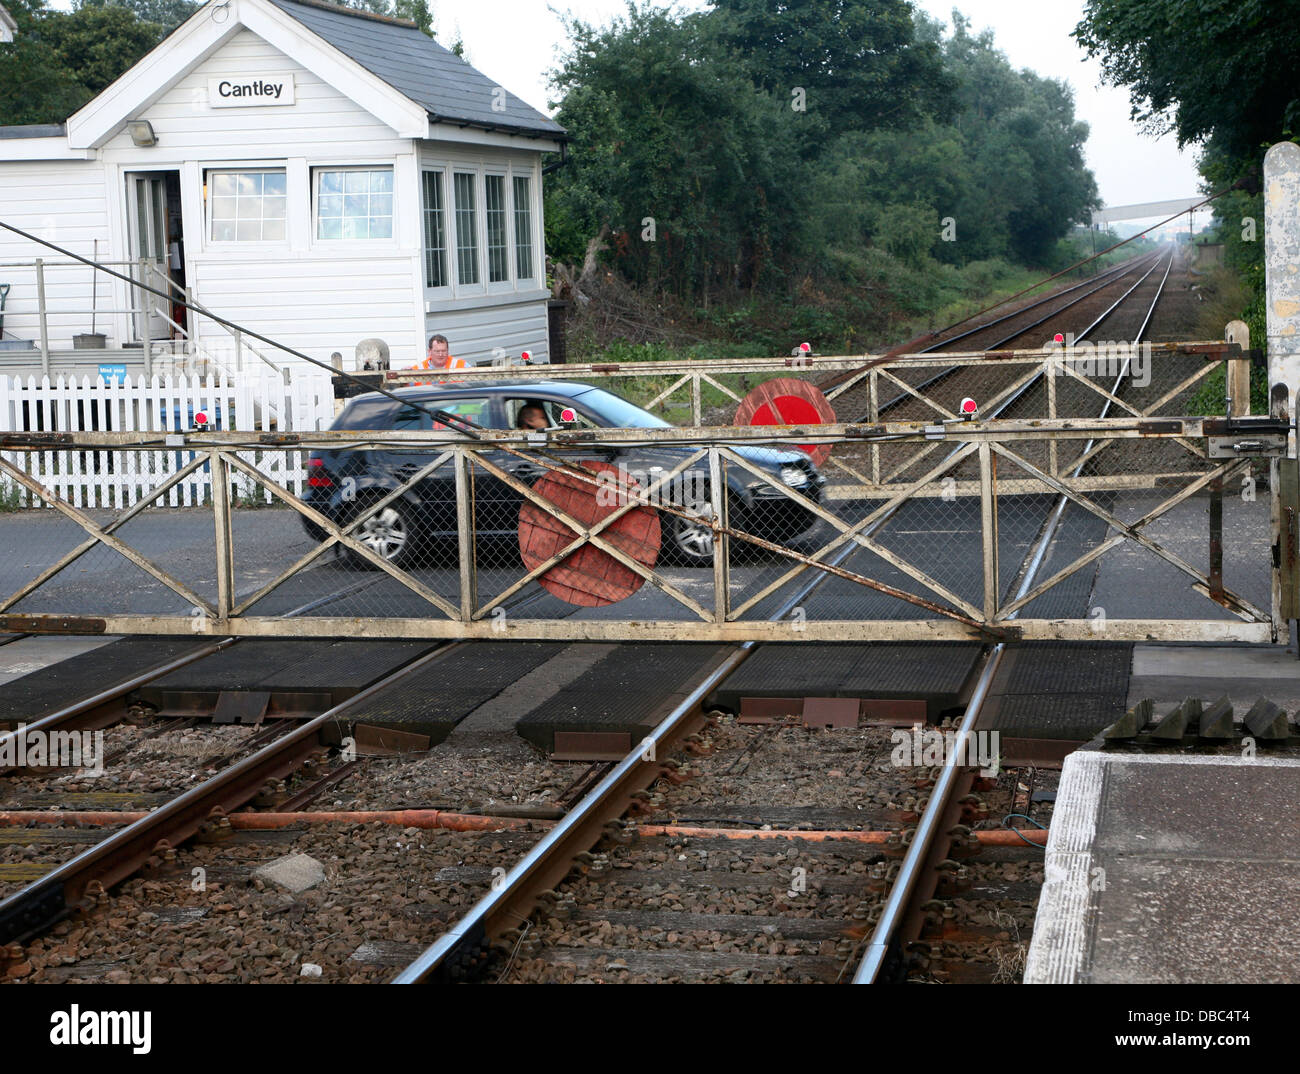 Azionato manualmente il passaggio a livello ferroviario a Cantley, Norfolk, Inghilterra Foto Stock